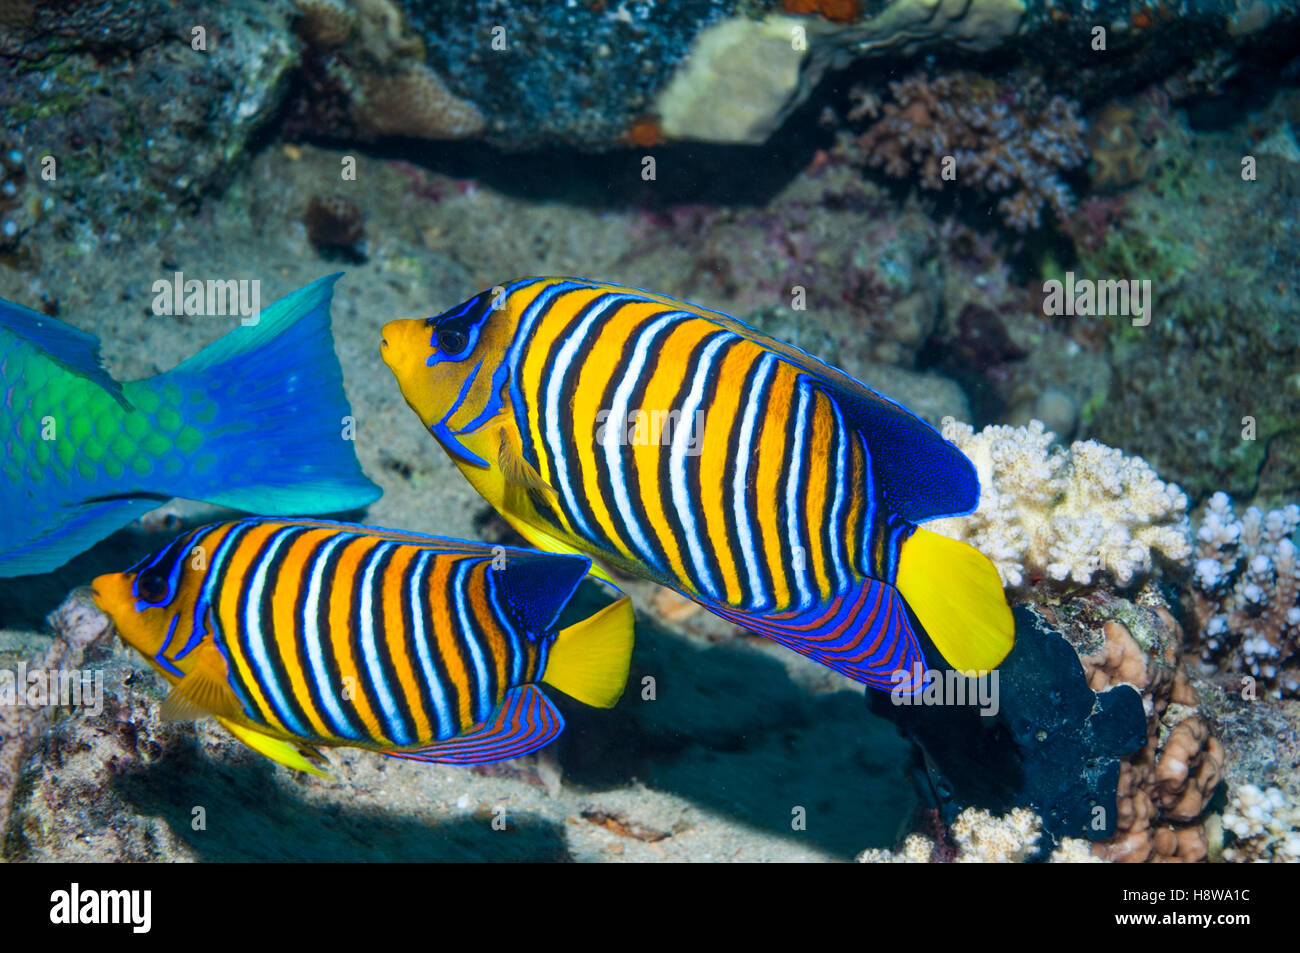 Regal angelfish [Pygoplites diacanthus].  Egypt, Red Sea. Stock Photo